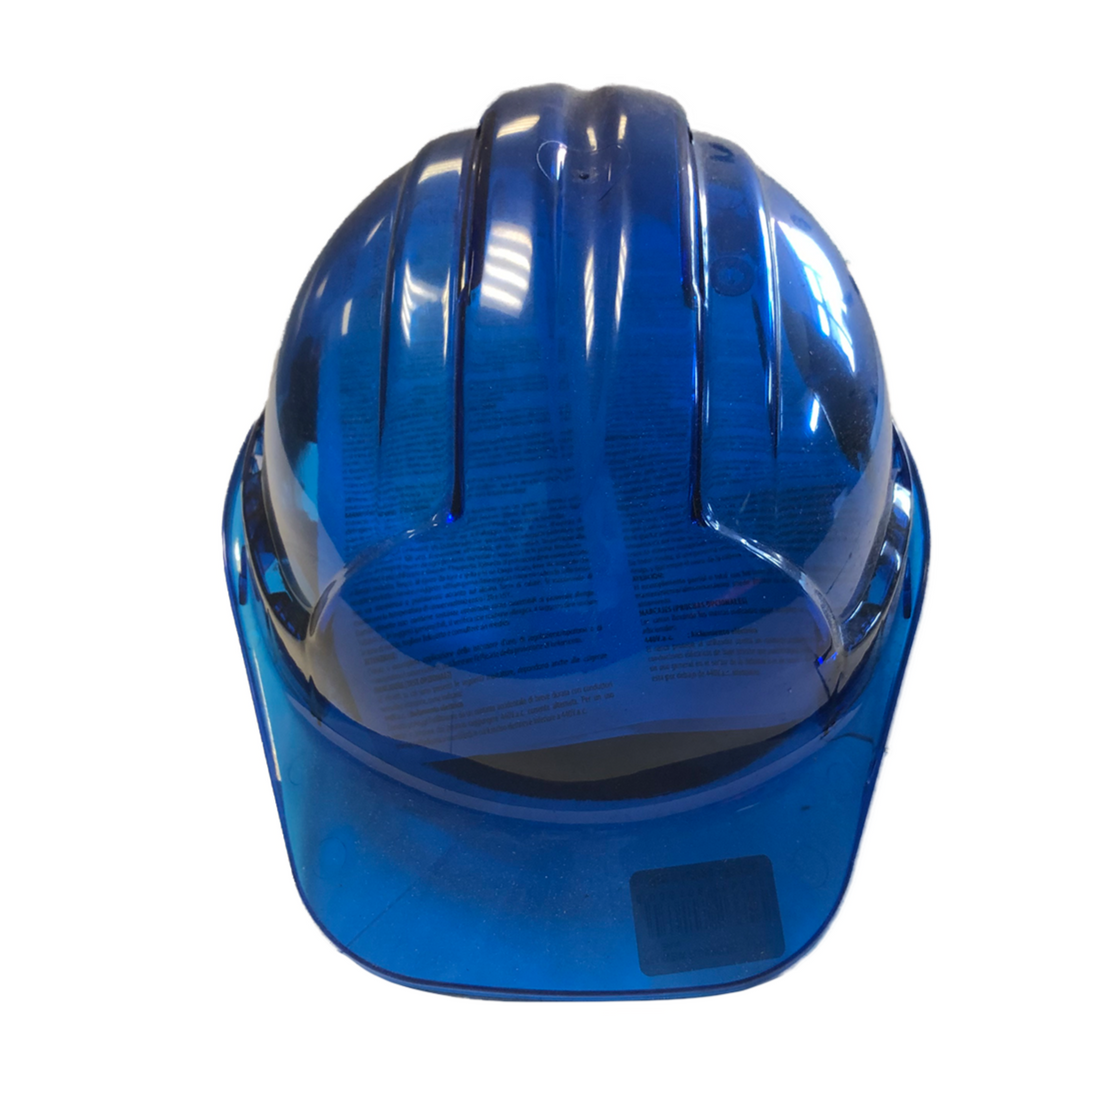 BLUE TRANSPARENT SAFETY HARD HELMET - PGS Supplies 21 Ltd